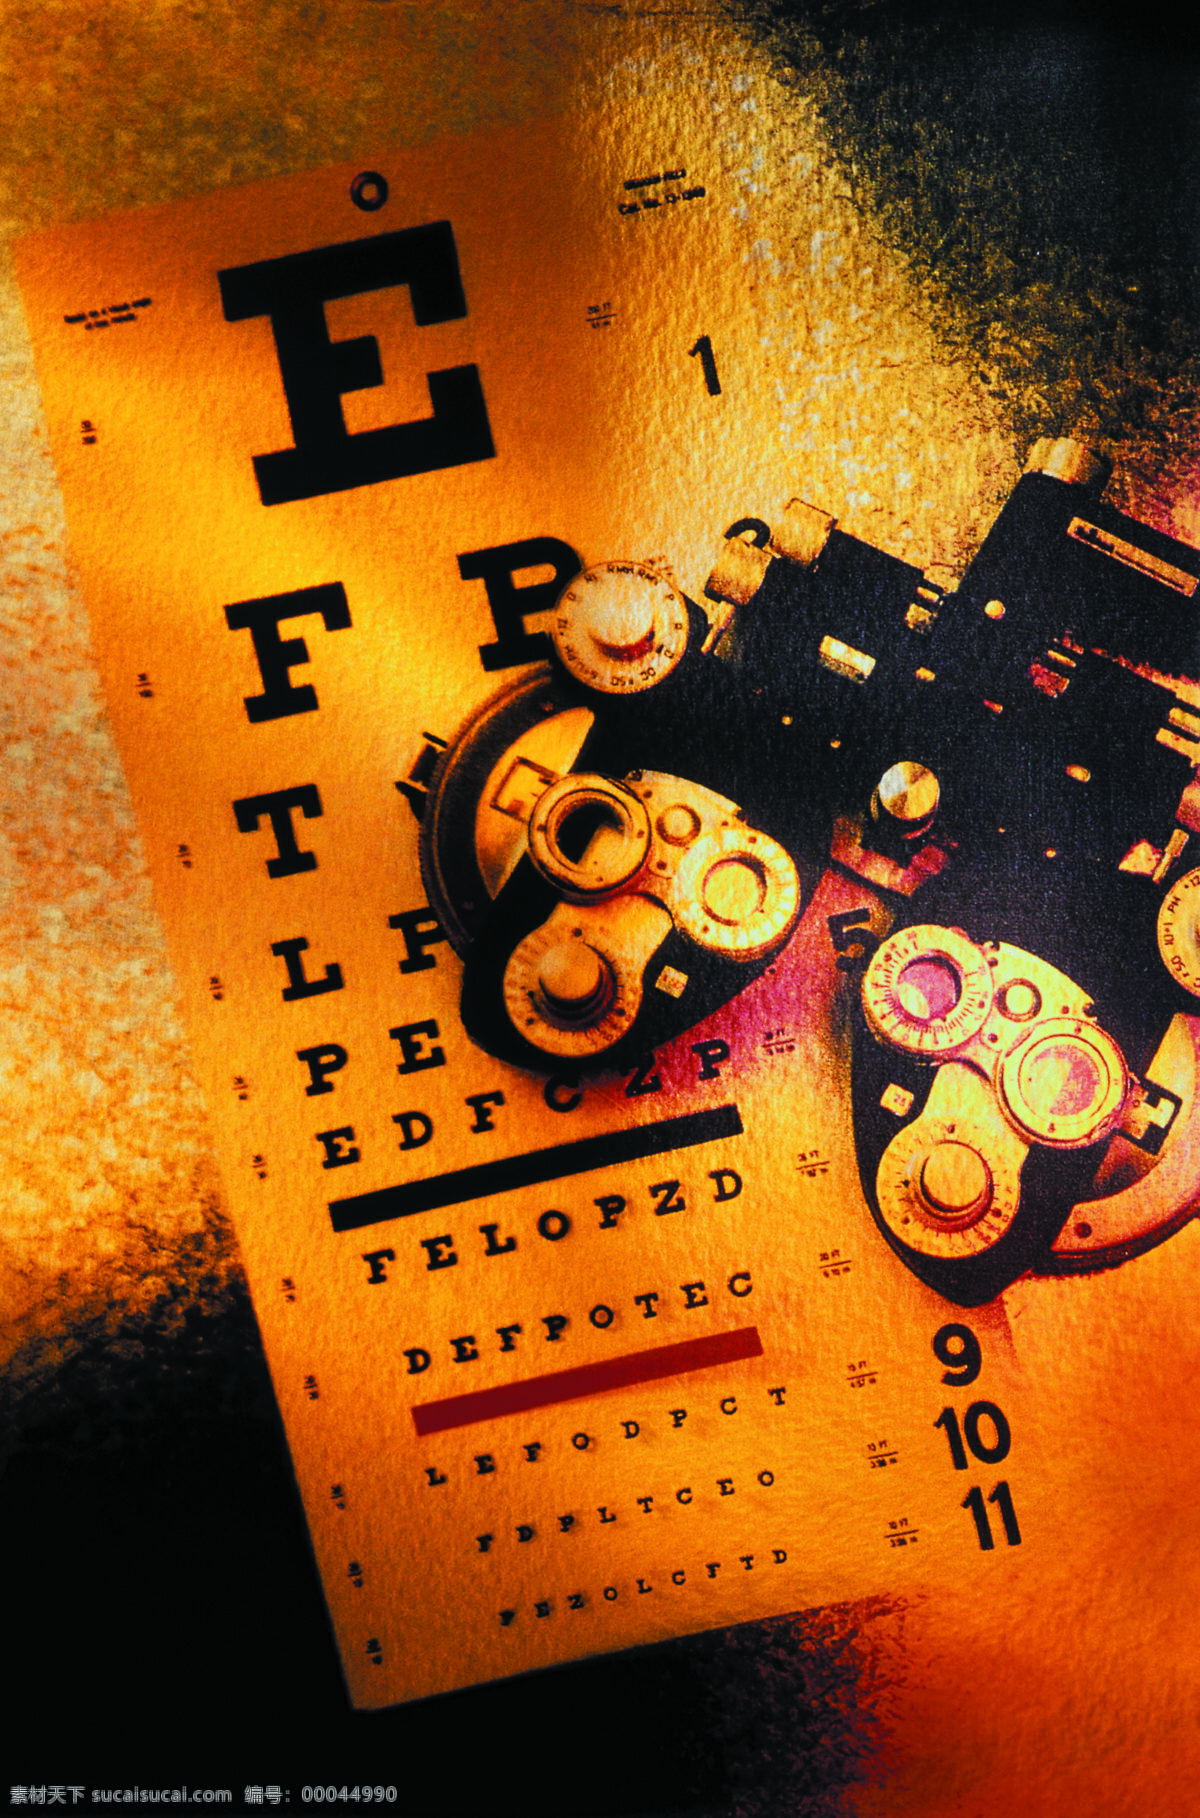 视力表 眼科 医疗用品 医院医疗